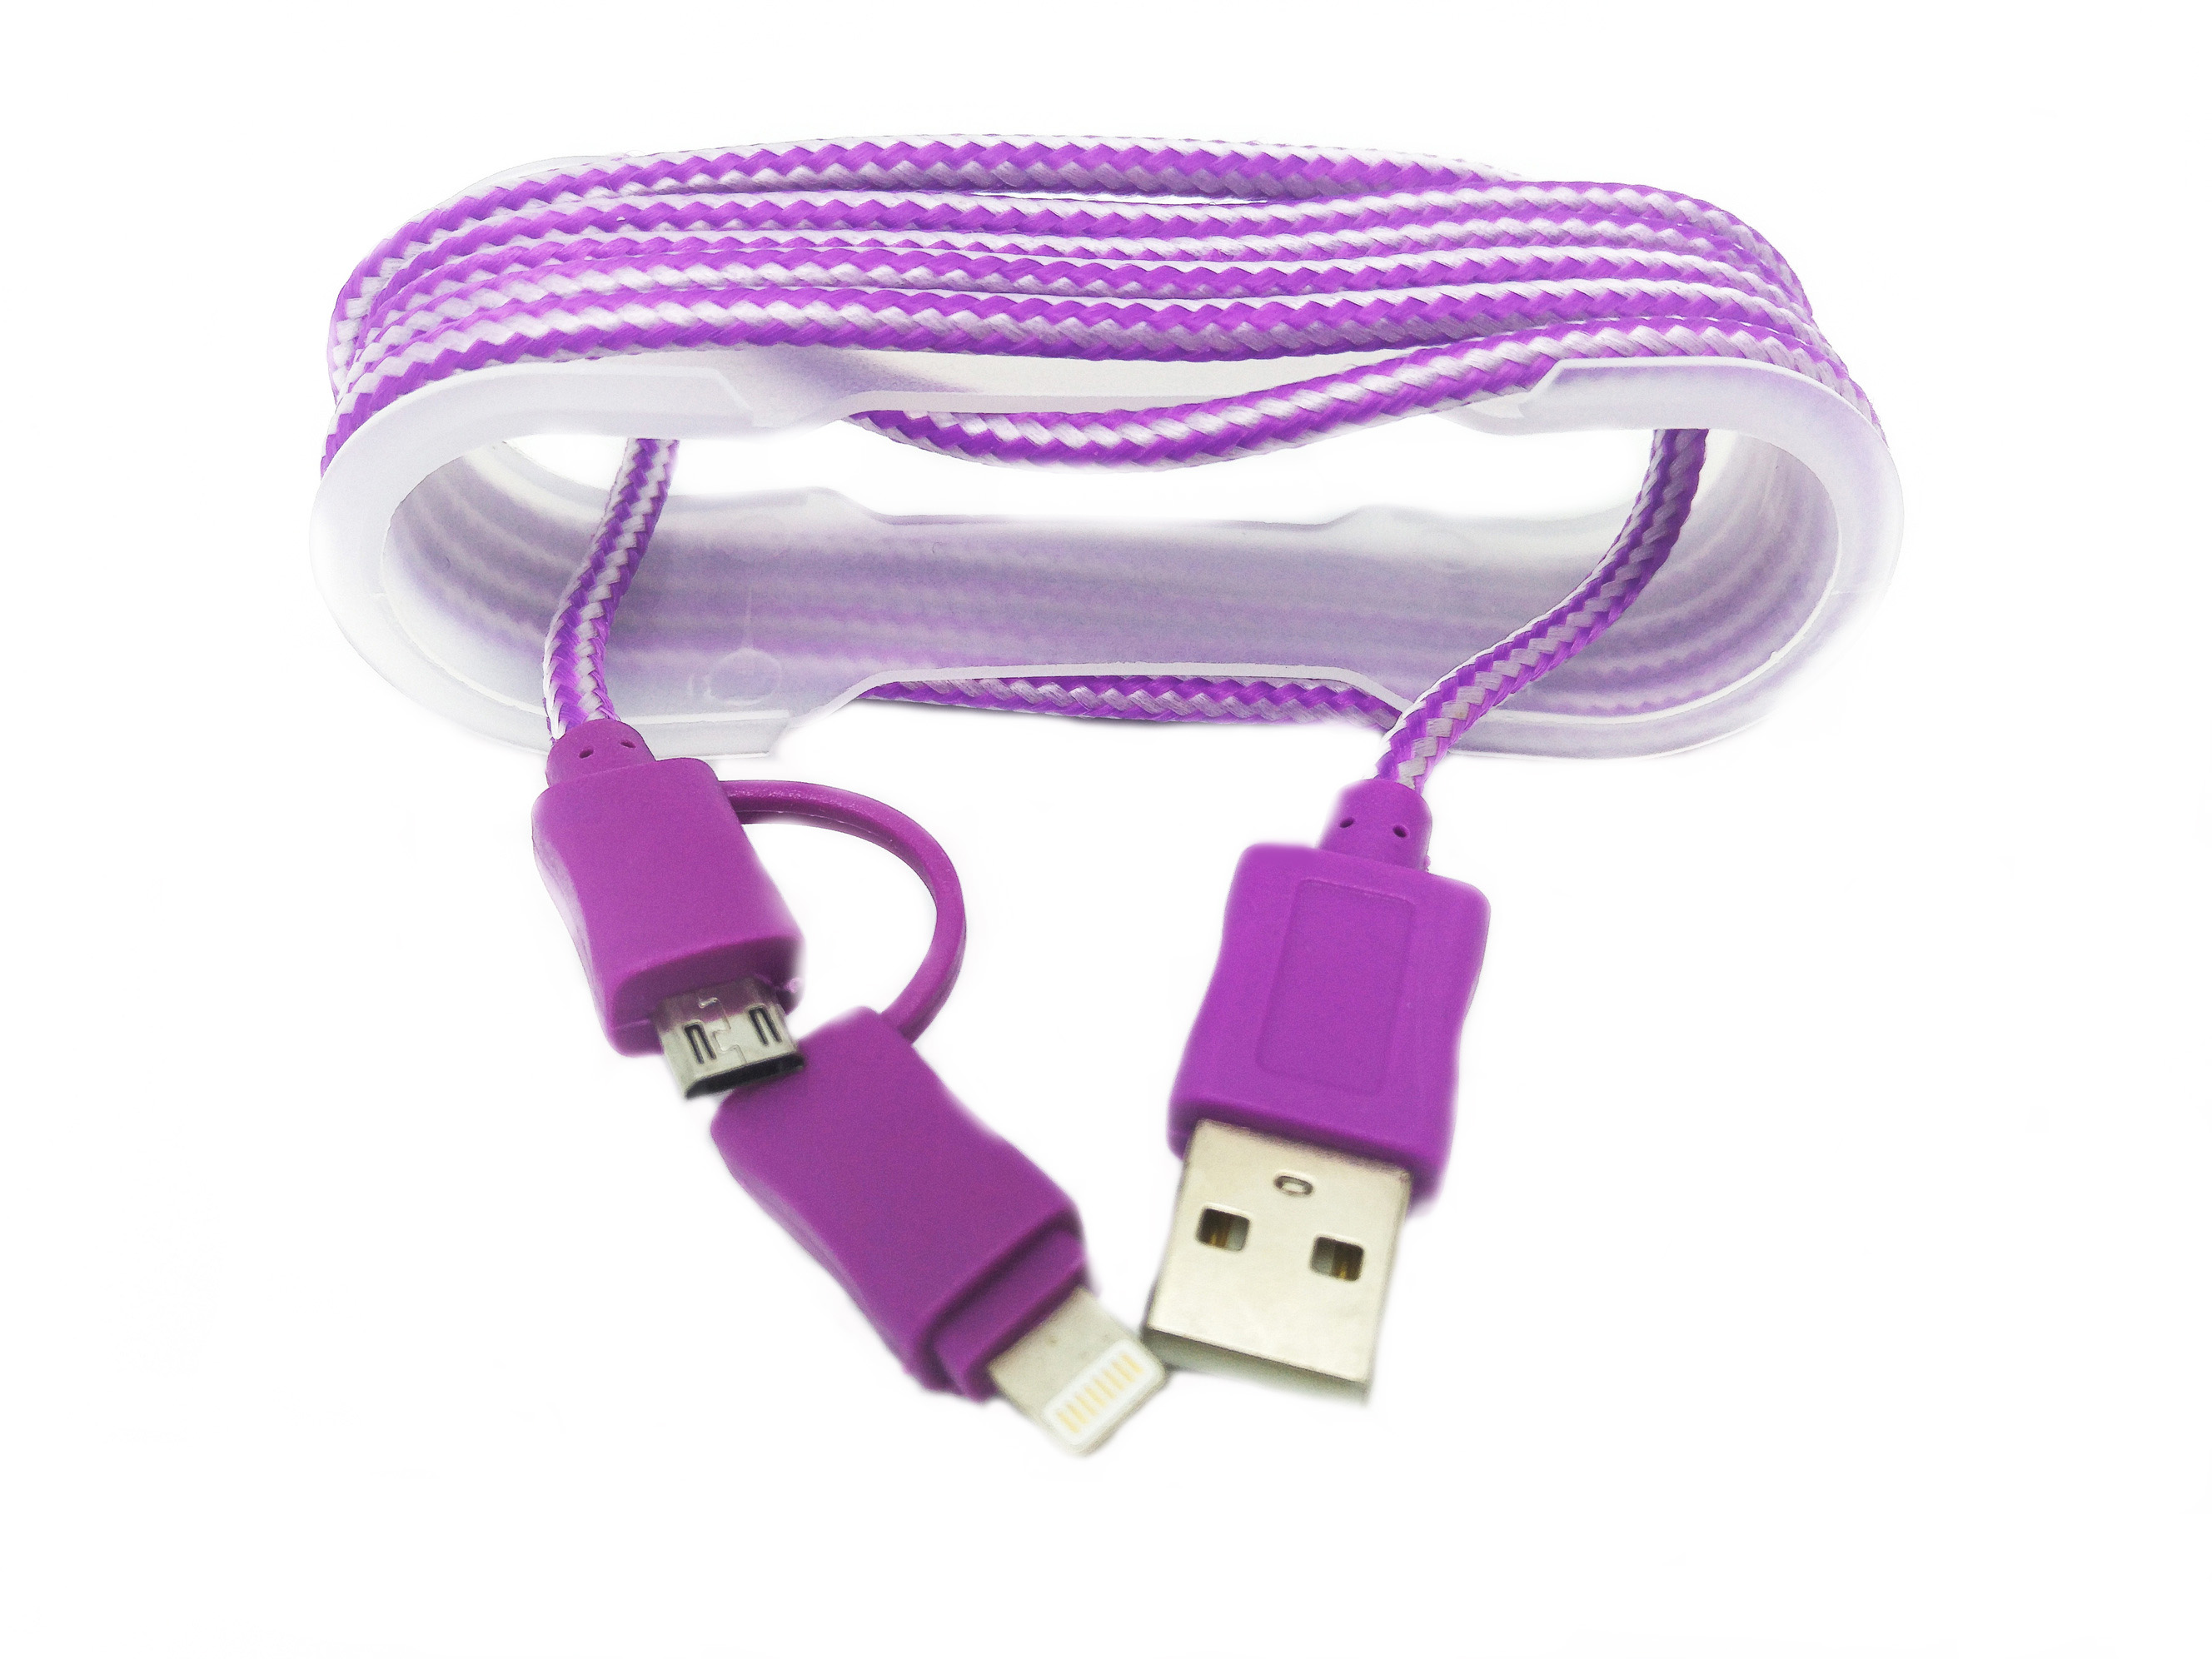 Cablu De Date MRG M-171, 2 In 1, Iphone 5/6 + Micro USB, Mov